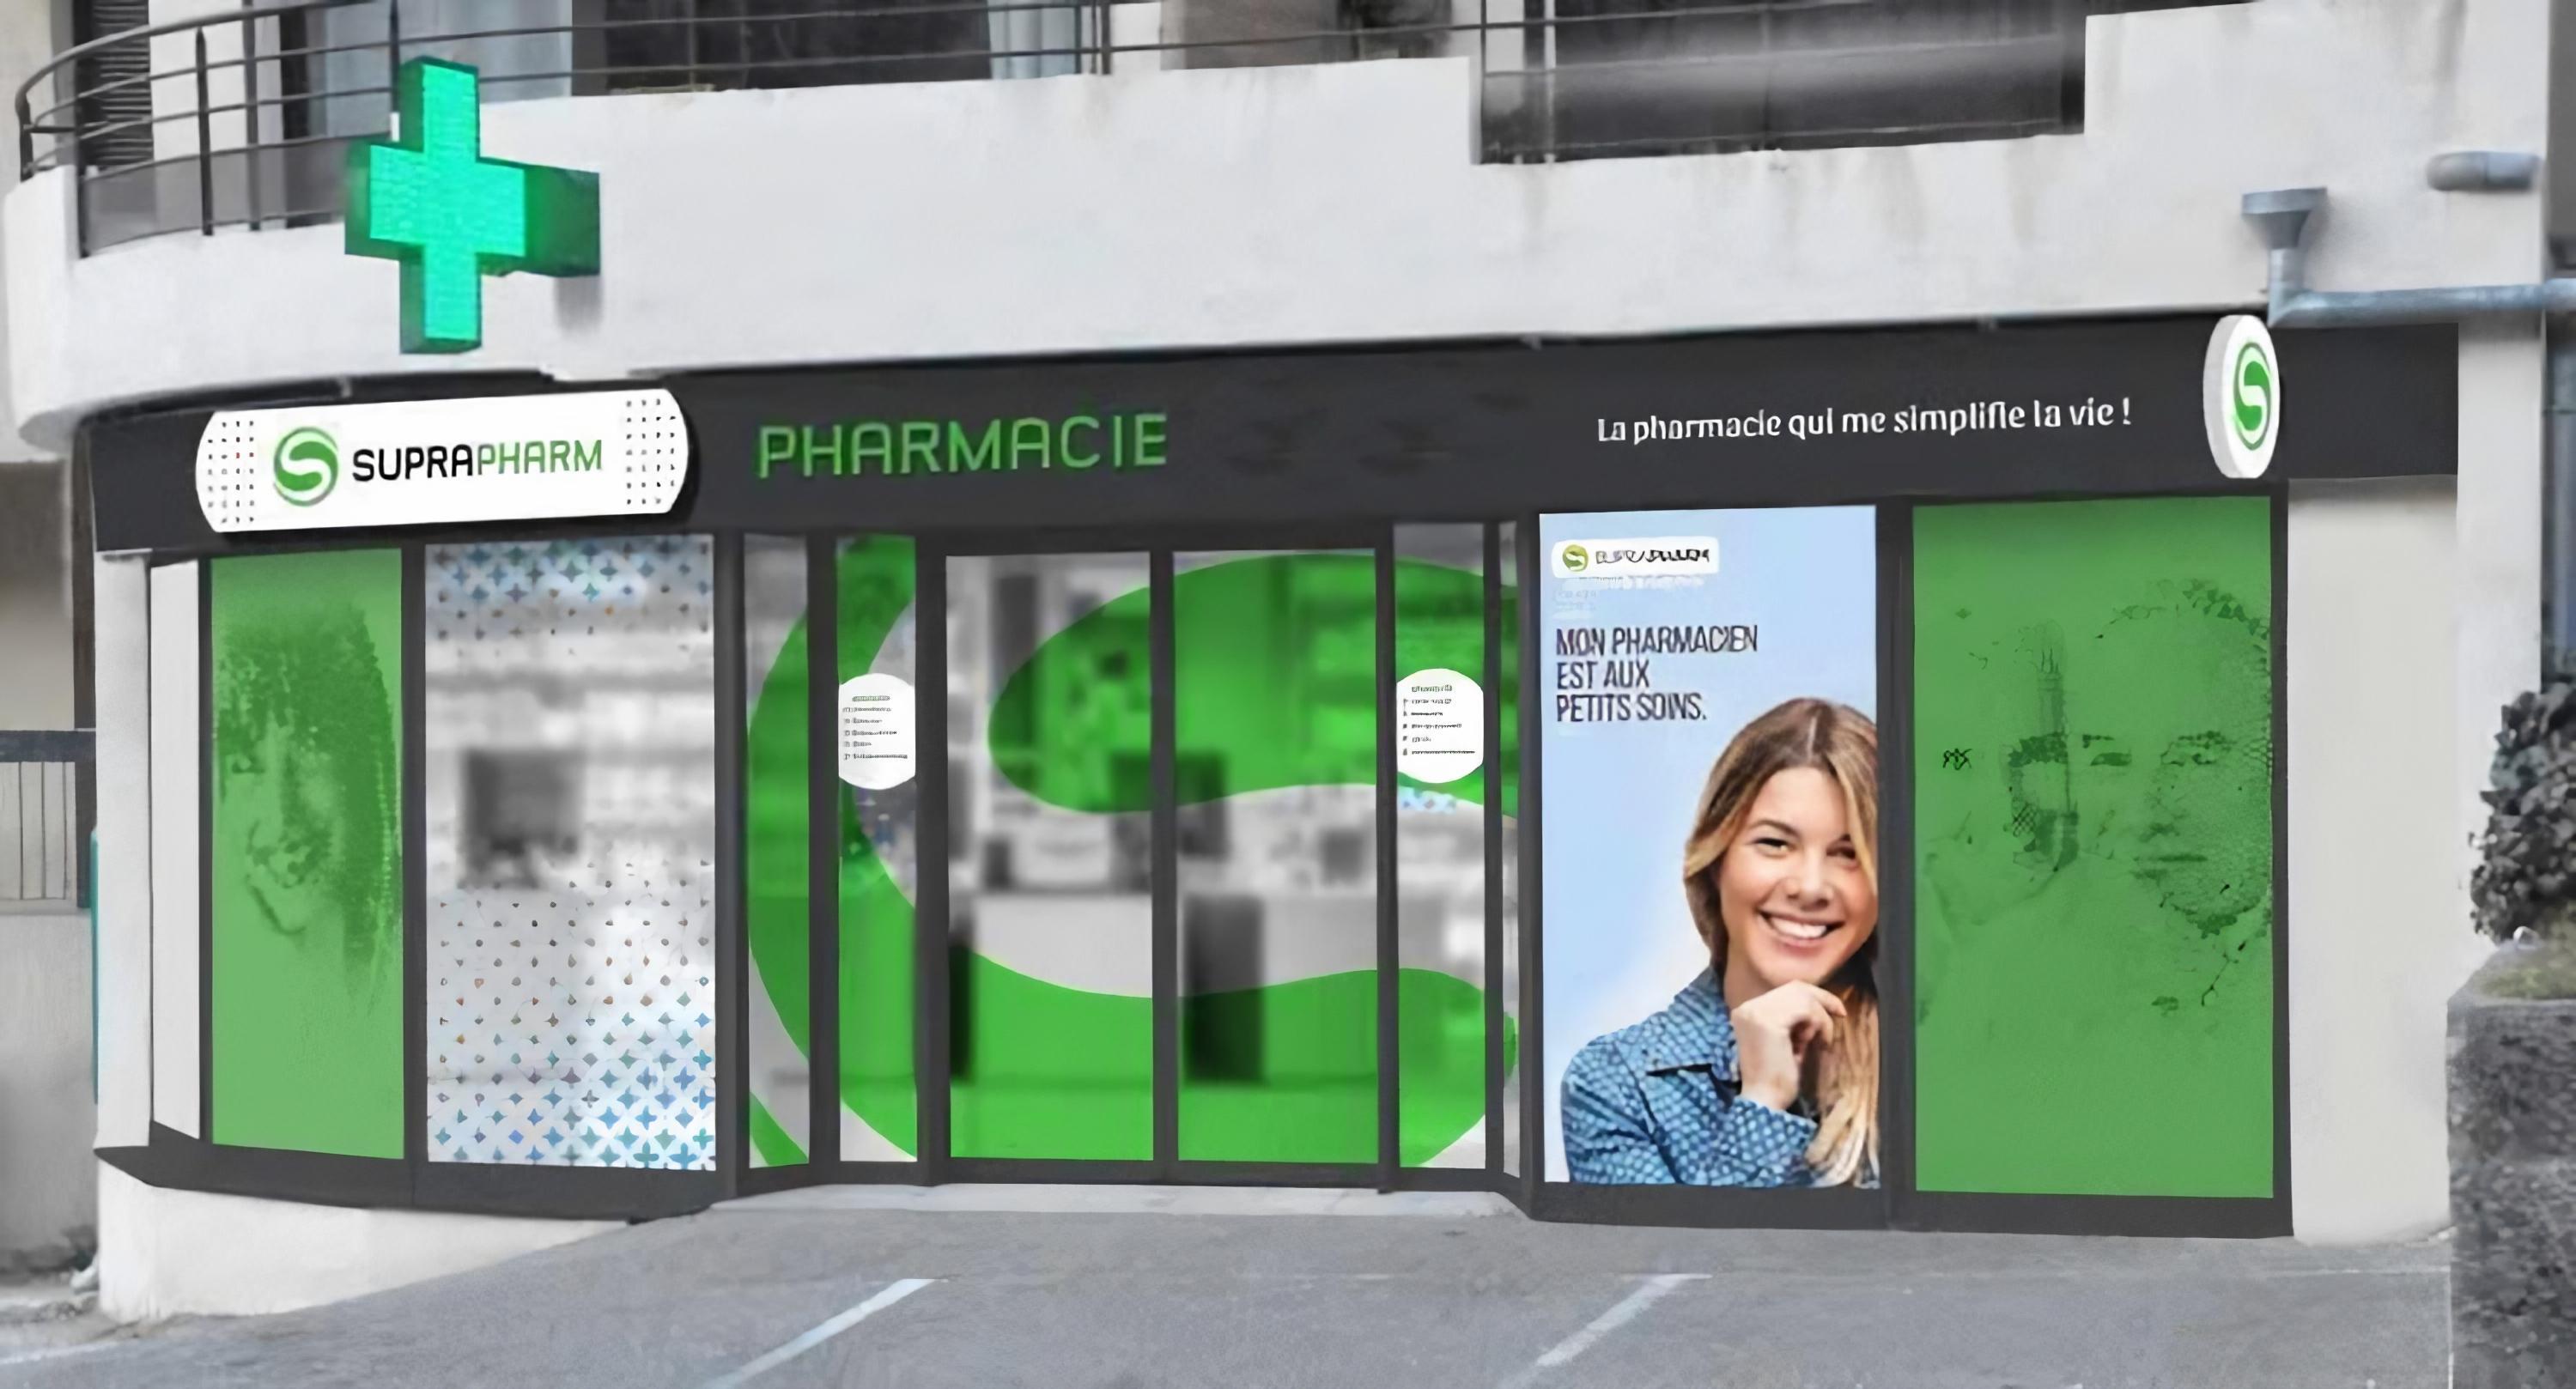 Pharmacie De La halle